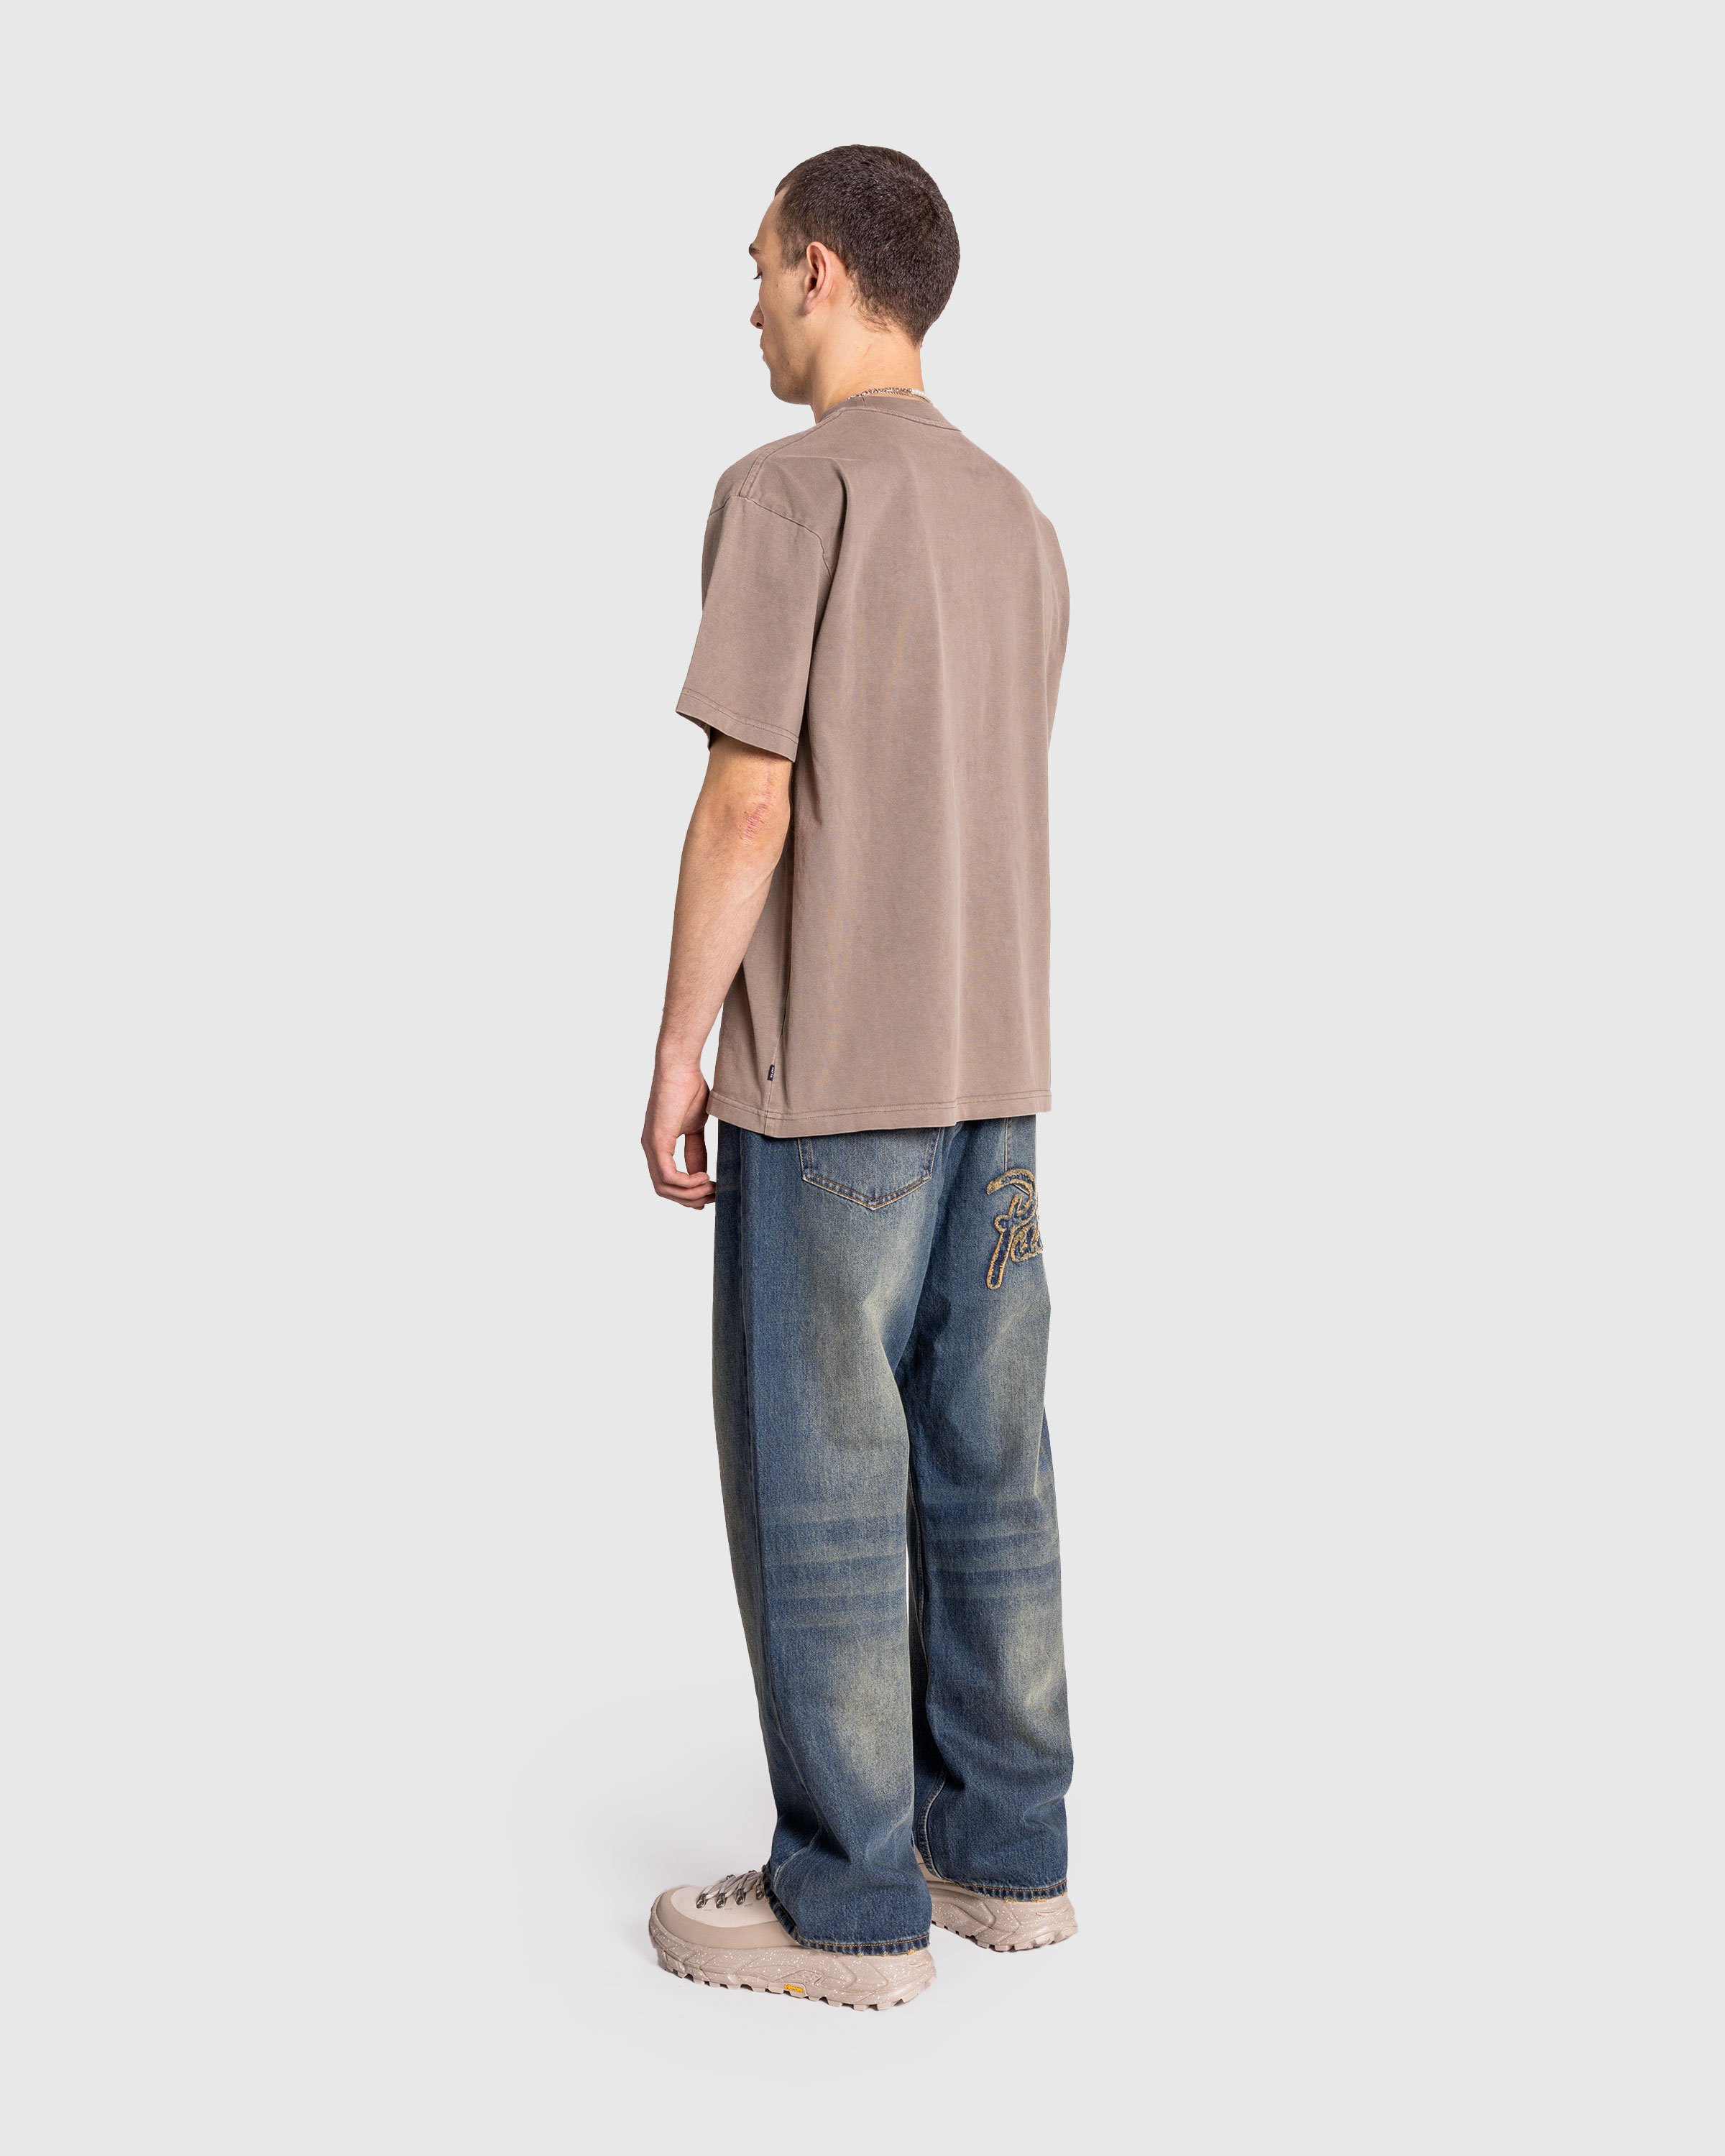 Patta - Basic Pocket T-Shirt Driftwood - Clothing - Grey - Image 4